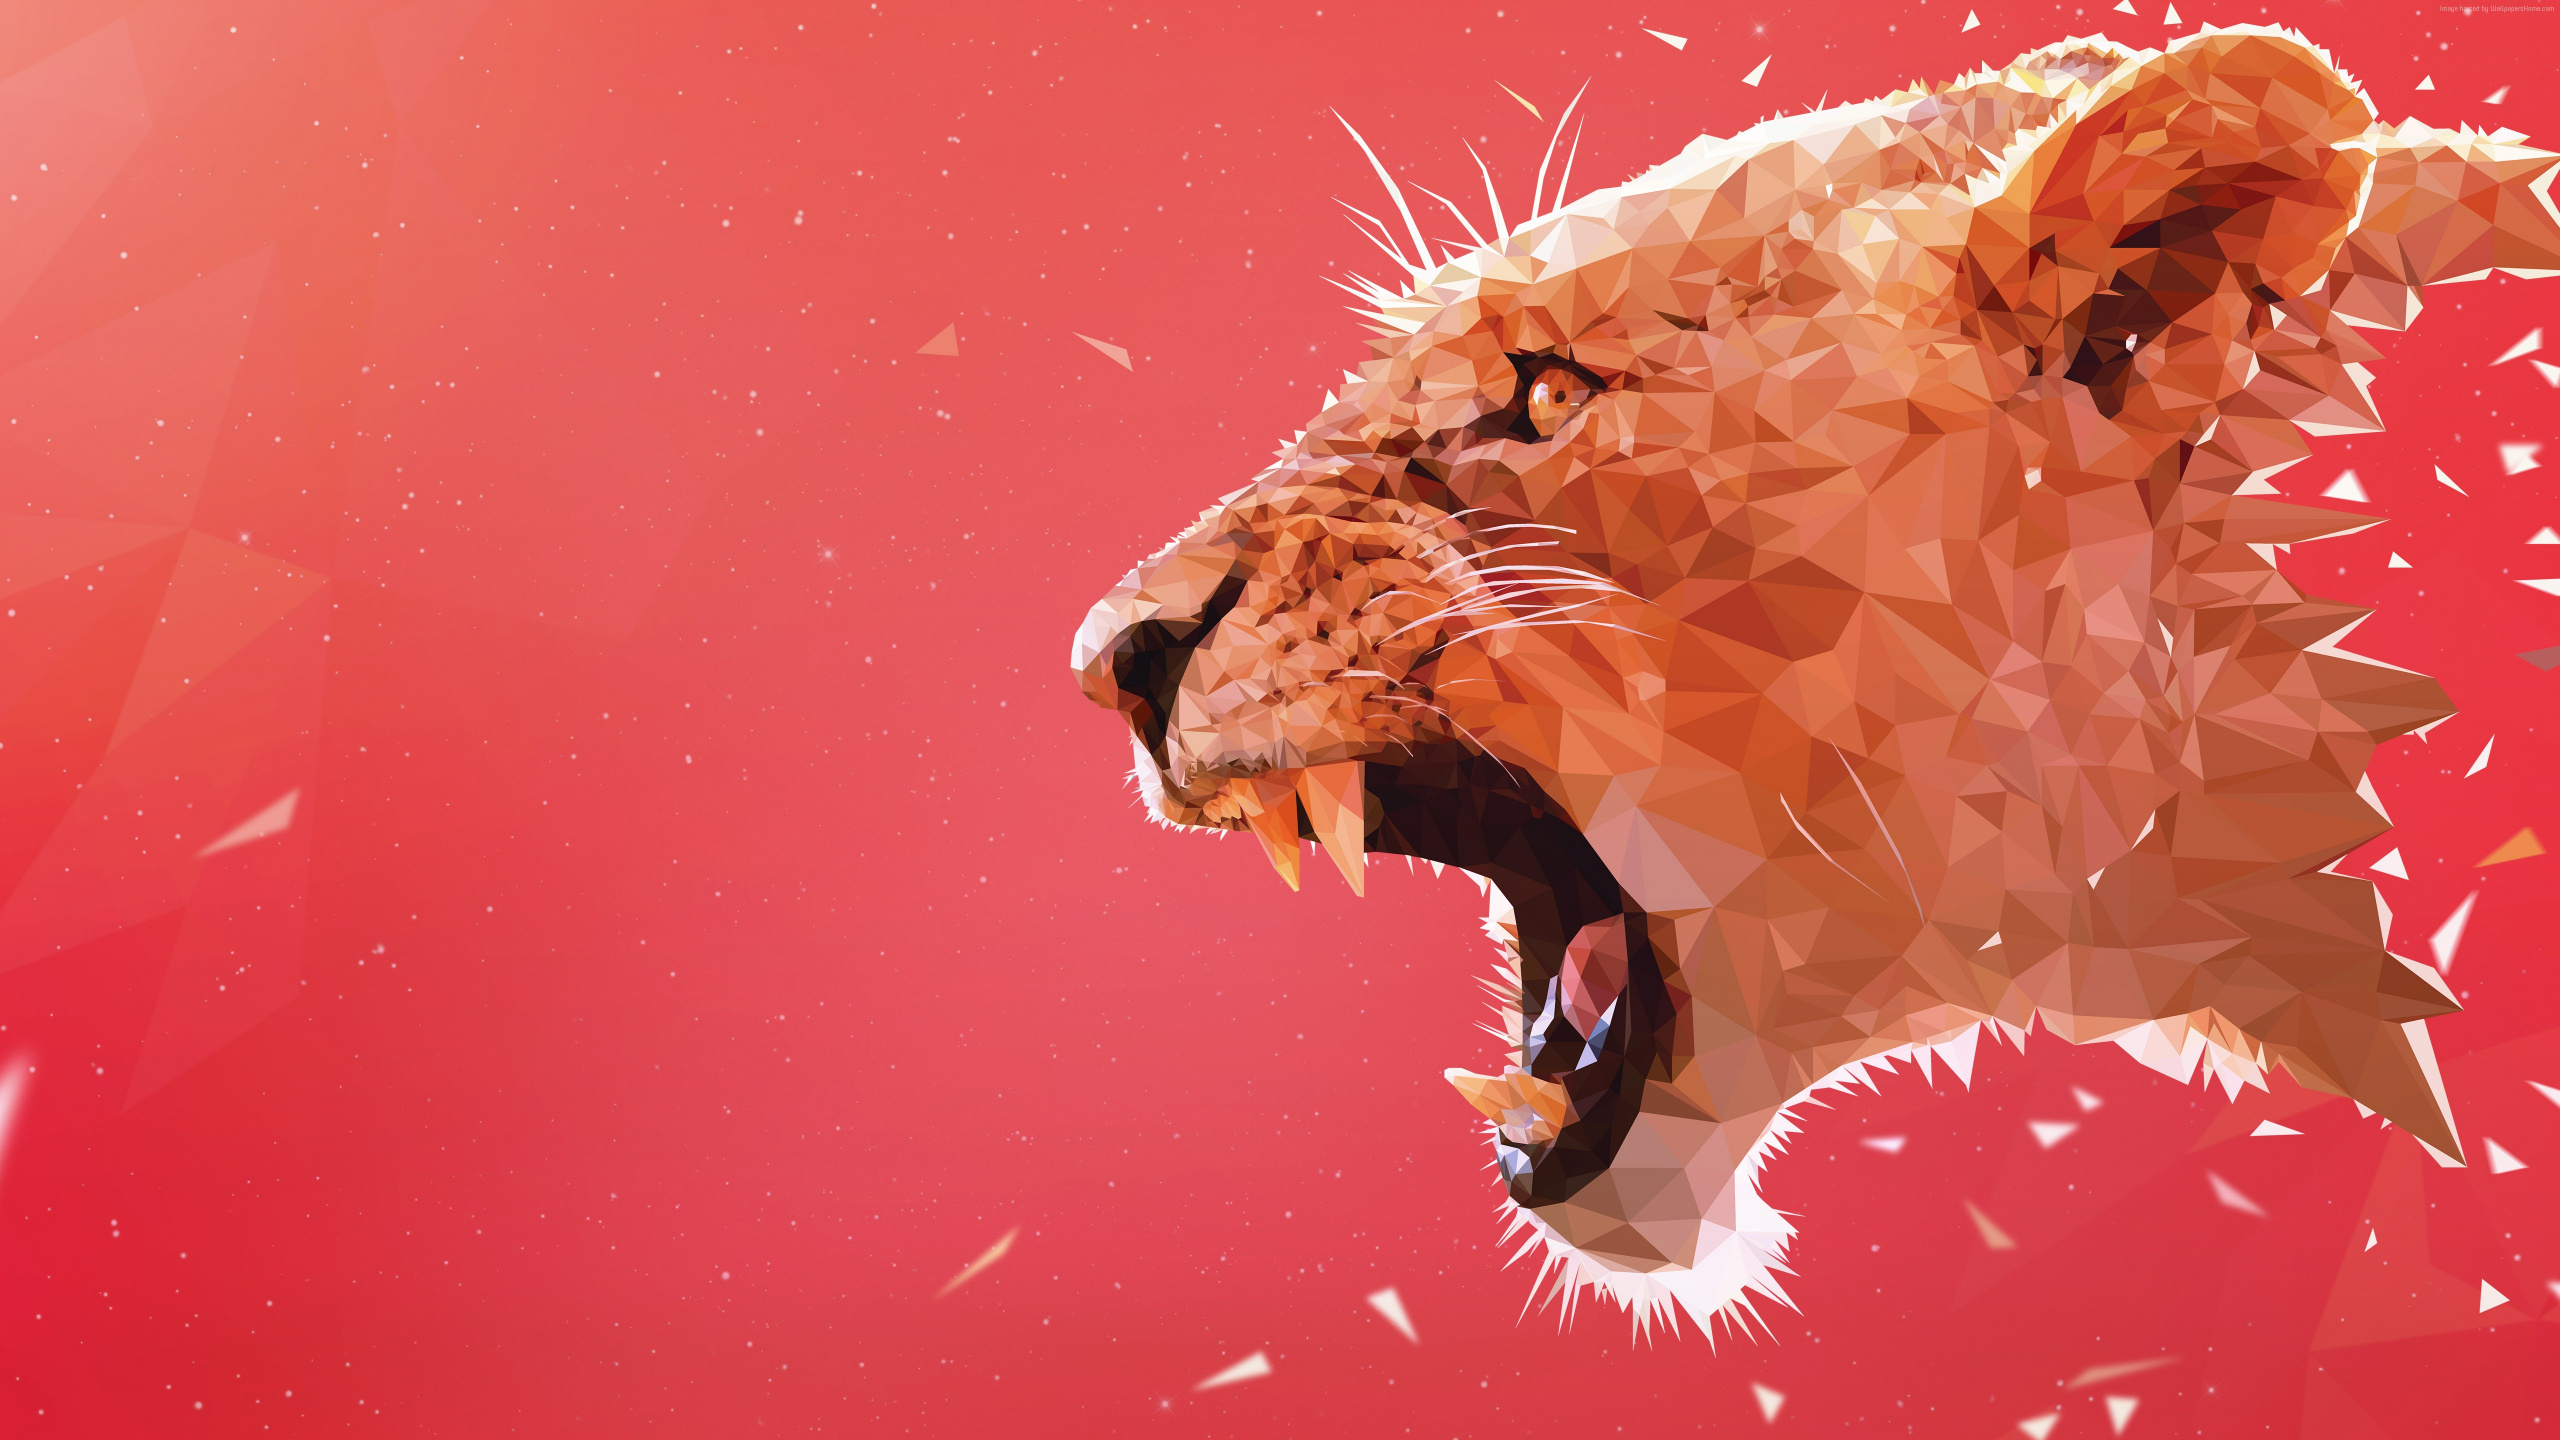 狮子, 食肉, 关闭了, 狮子吼, 红色的 壁纸 2560x1440 允许